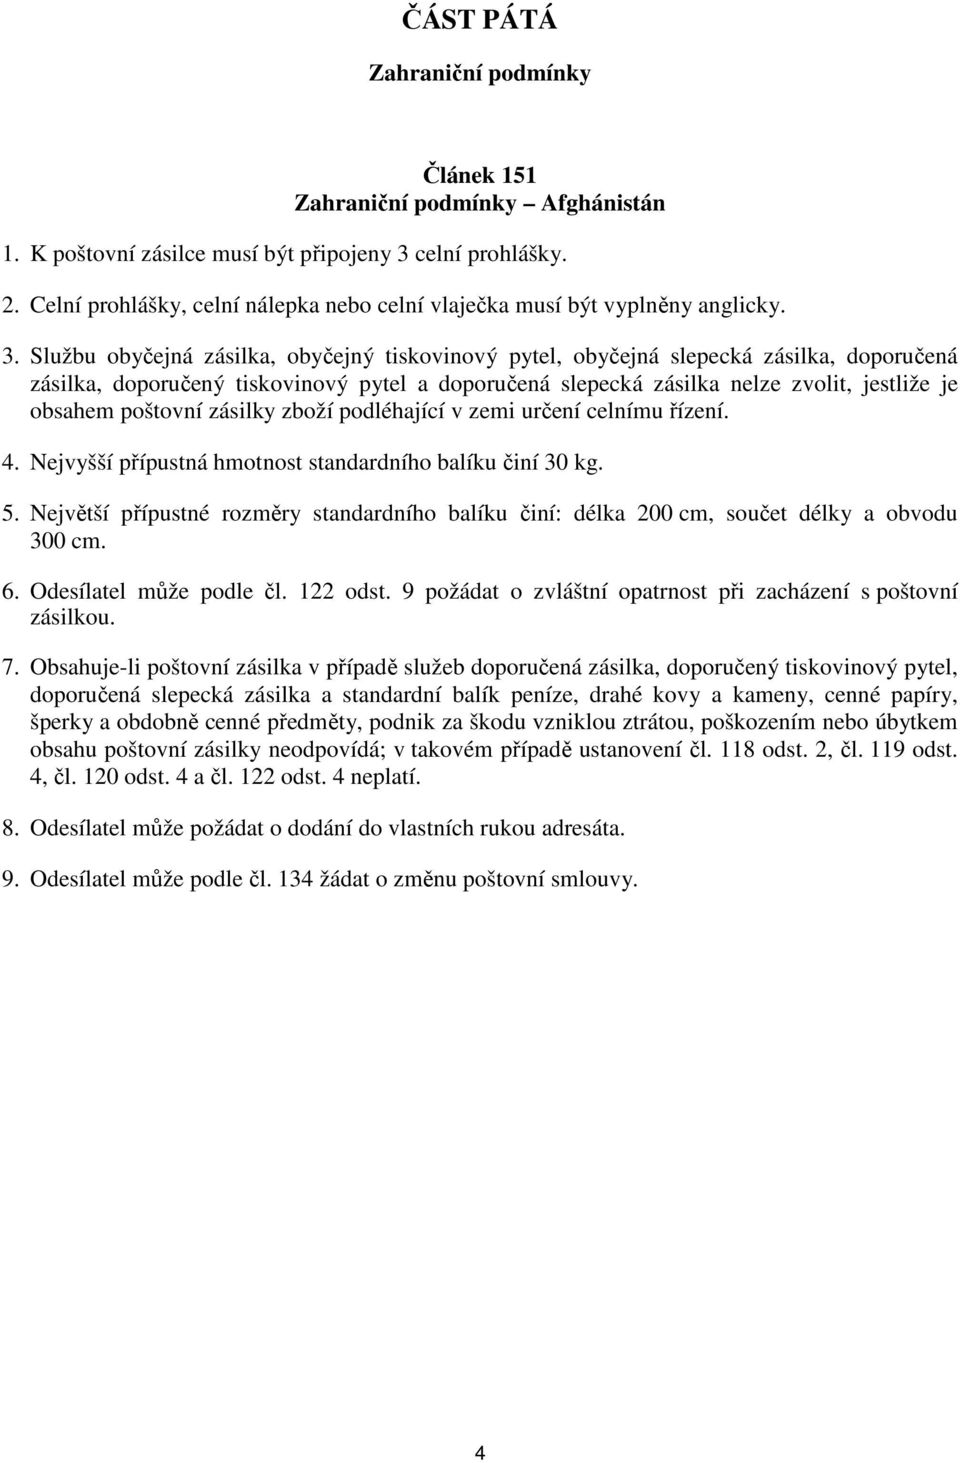 POŠTOVNÍ PODMÍNKY. České pošty, s.p. ZAHRANIČNÍ PODMÍNKY - PDF Free Download